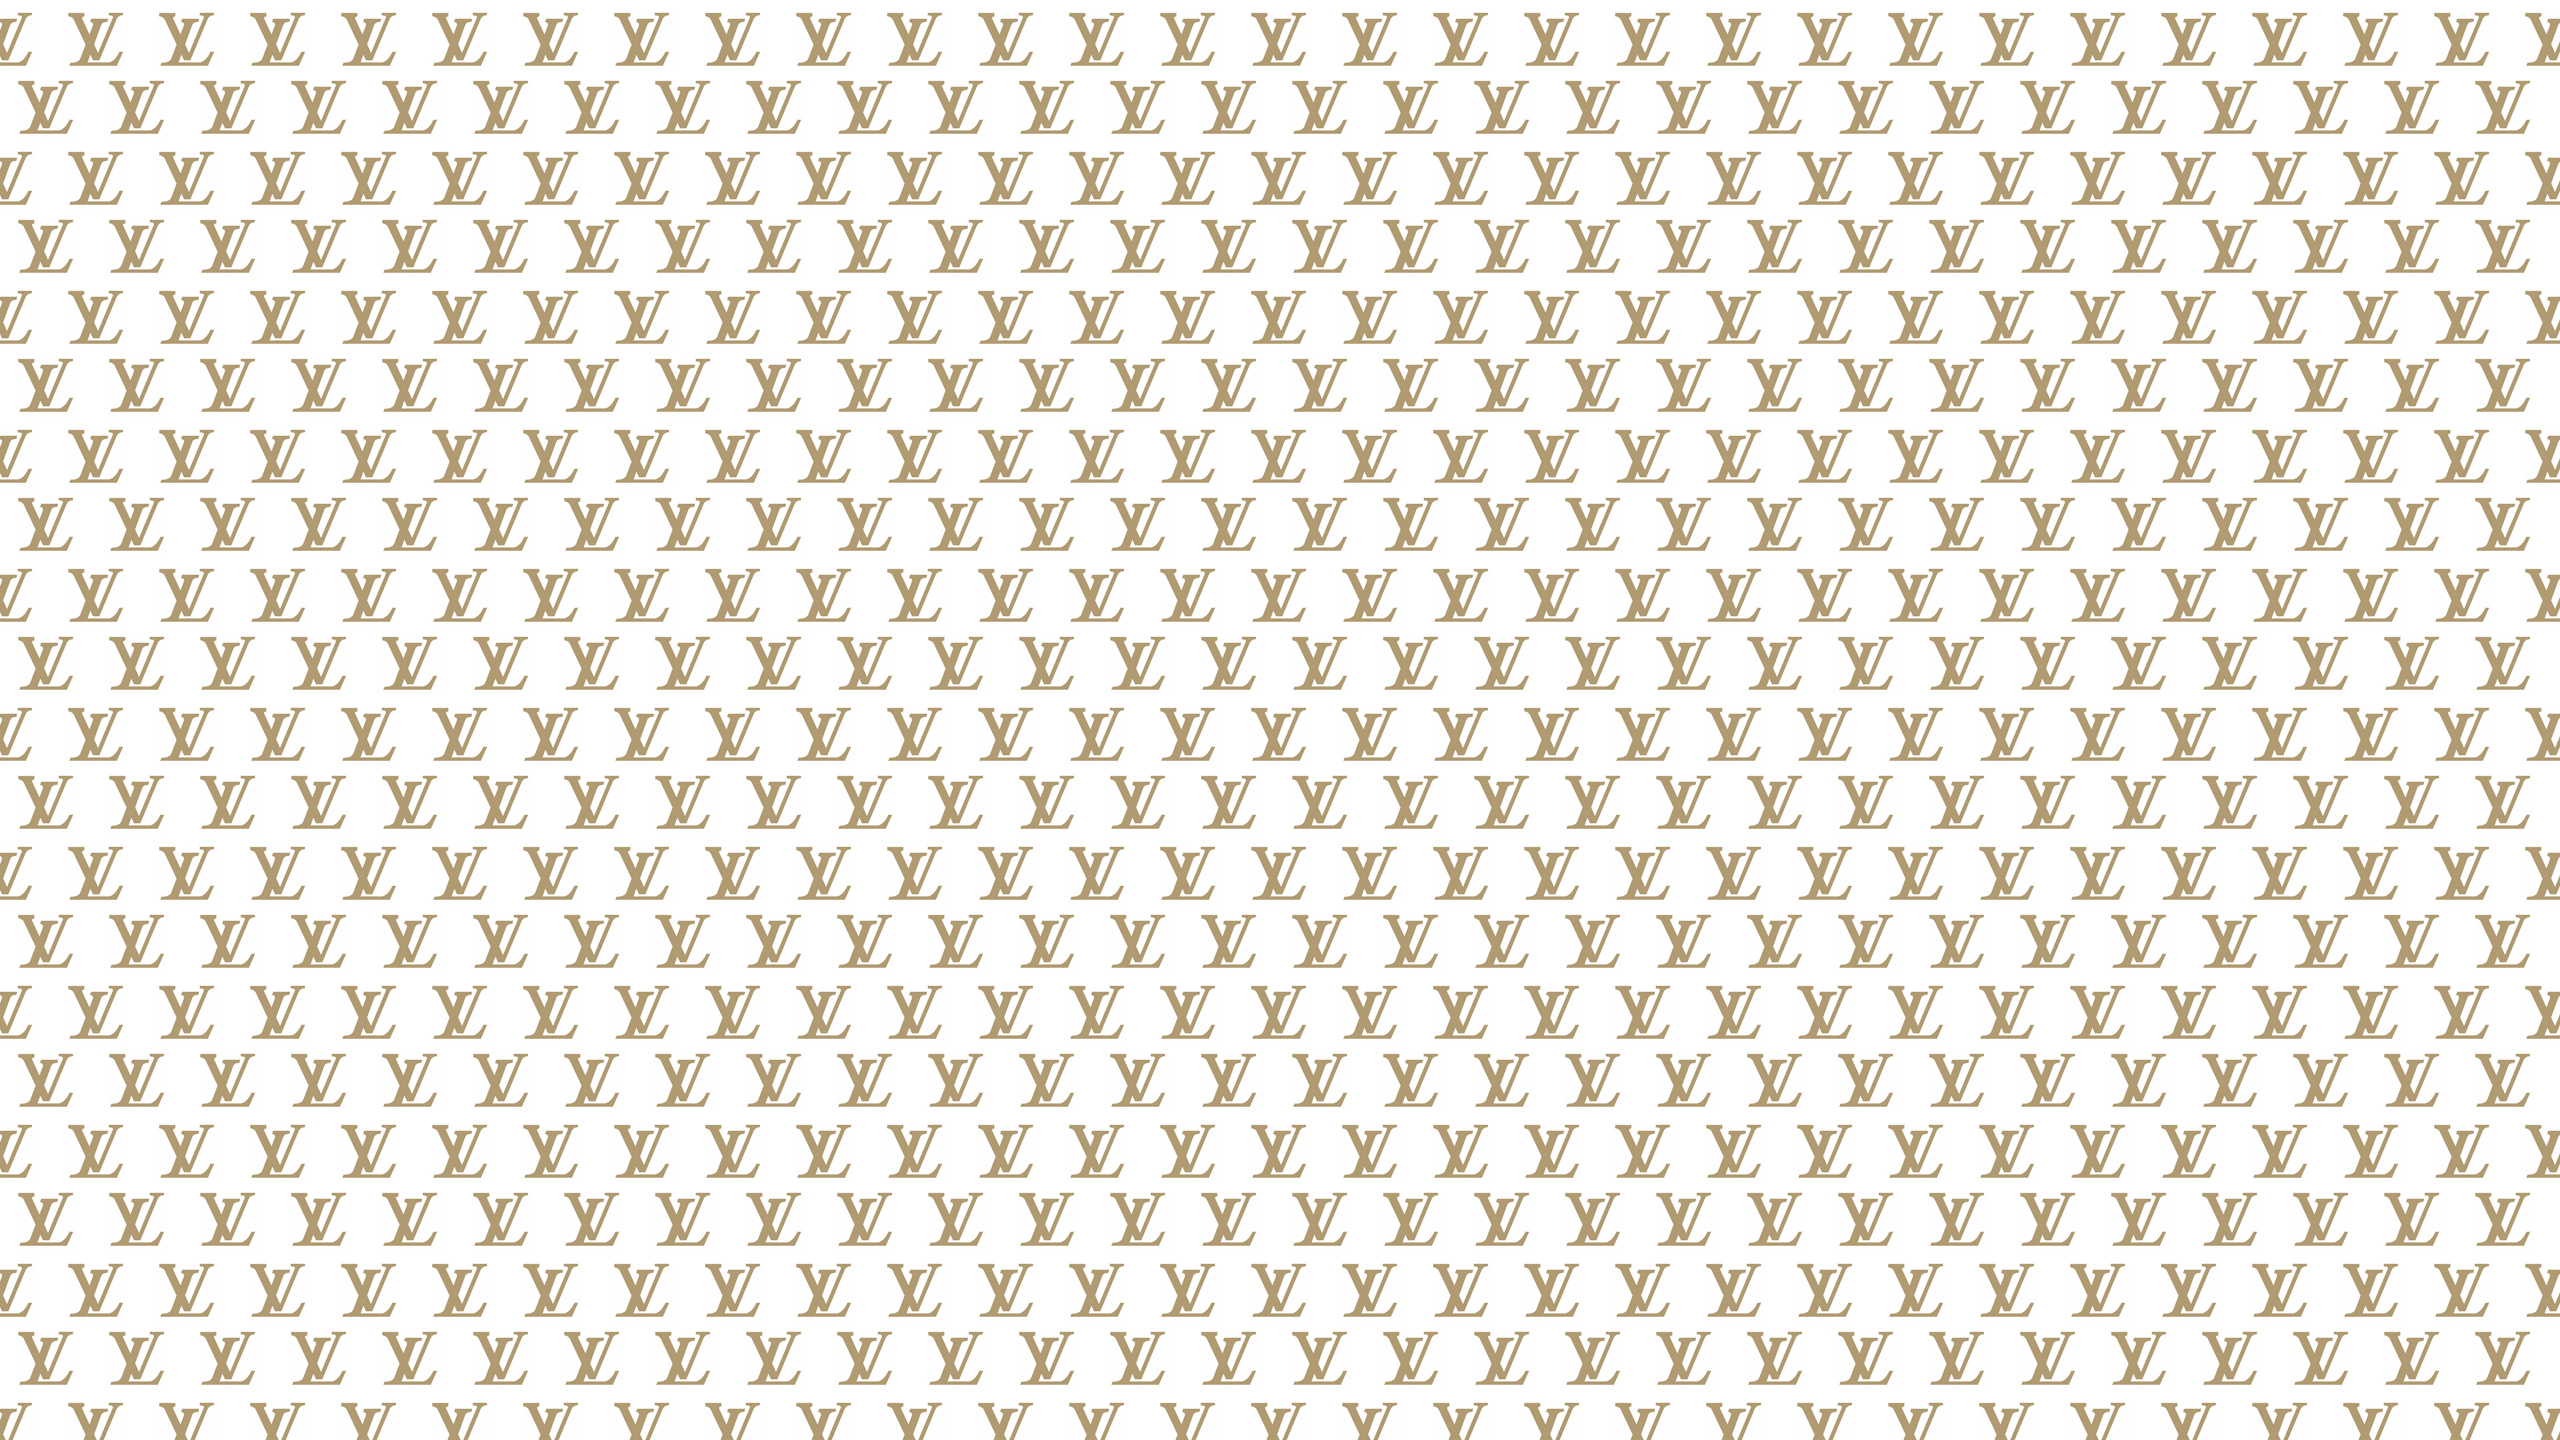 Free download Louis Vuitton Damier Print FashionDesignerCollection  [1024x1024] for your Desktop, Mobile & Tablet, Explore 46+ Louis Vuitton  Damier Wallpaper